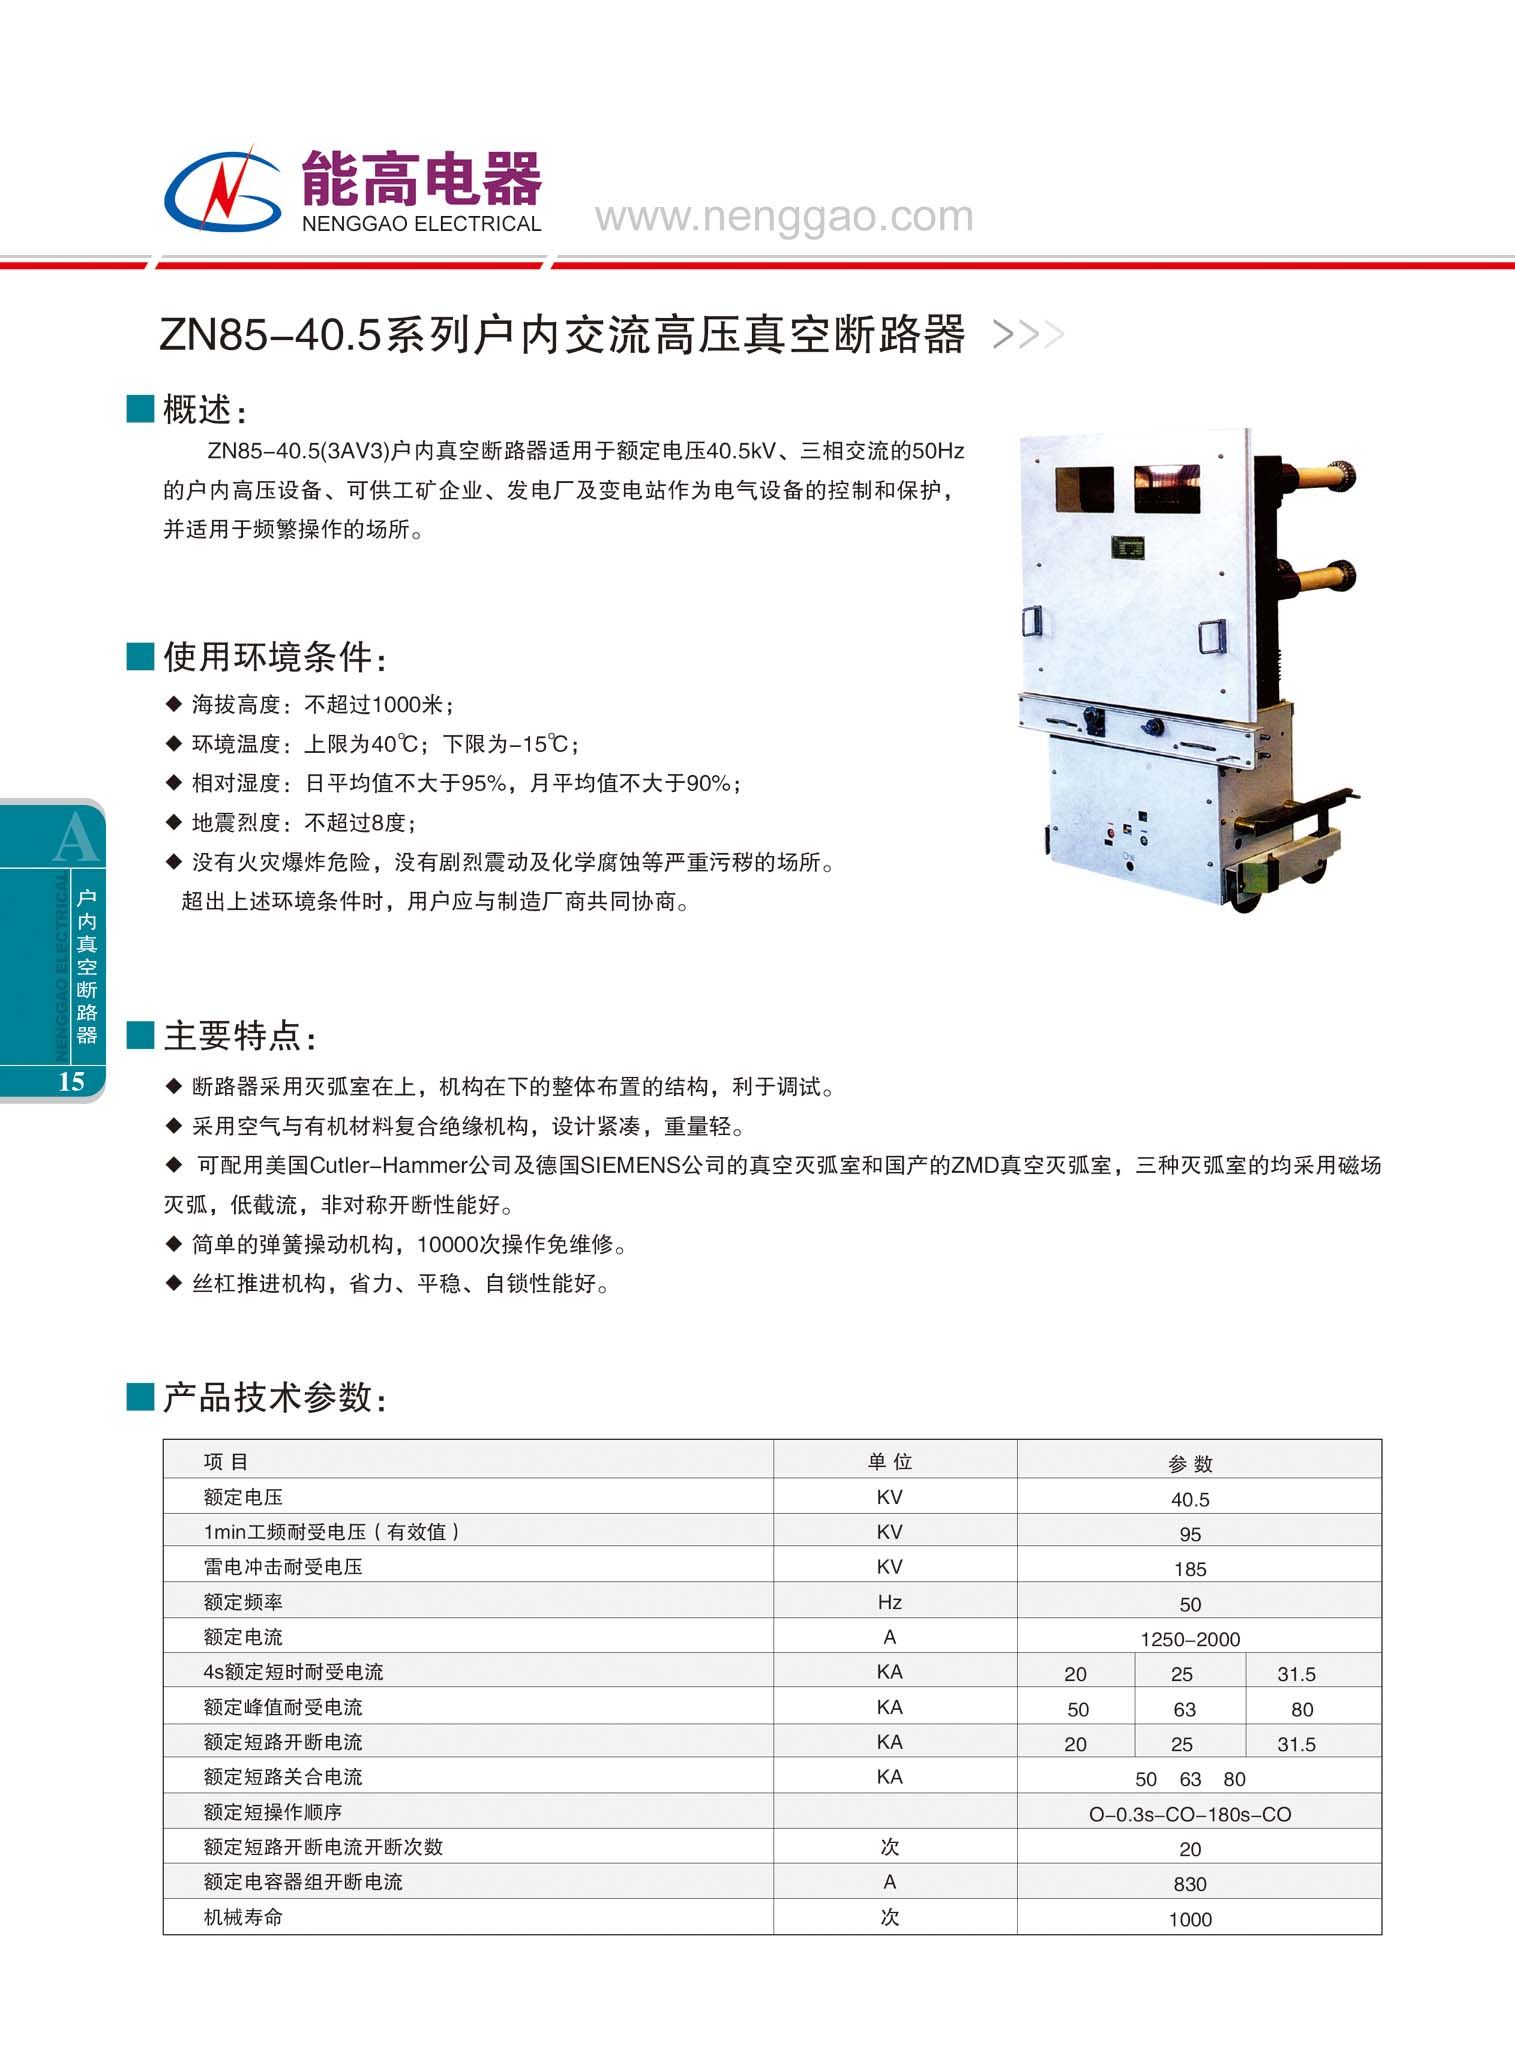 ZN85-40.5系列戶內交流高壓真空斷路器(圖文)